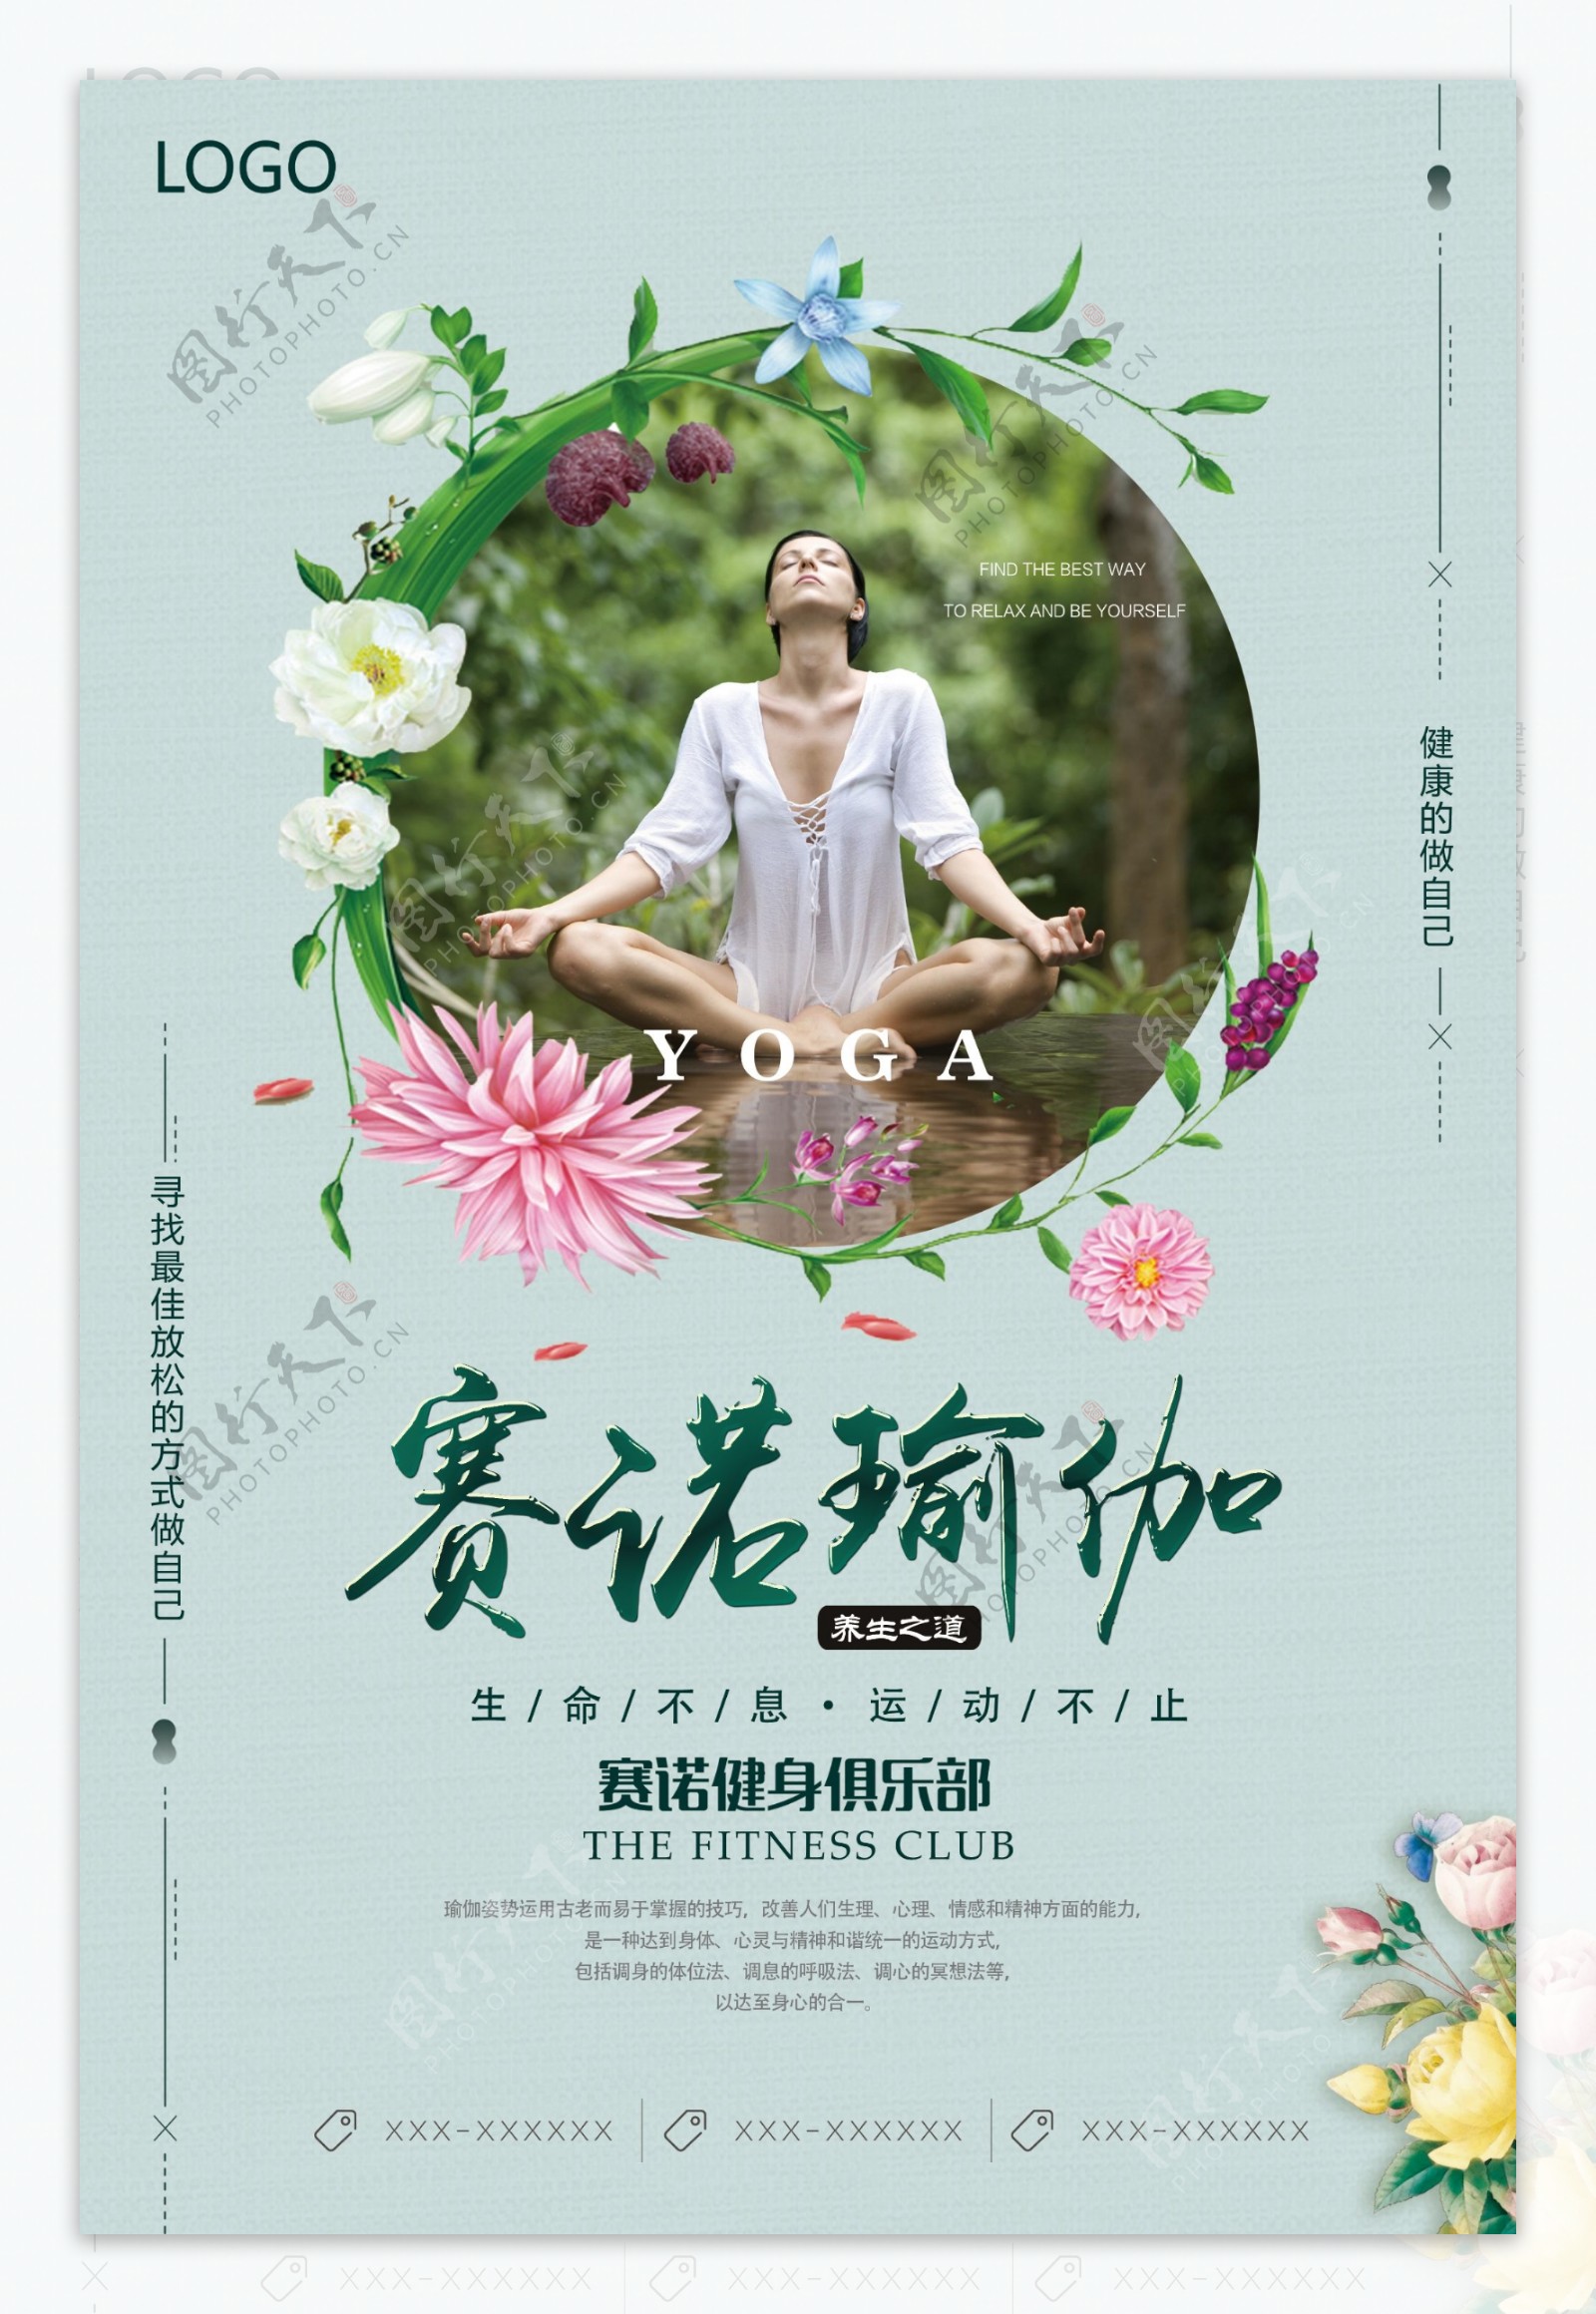 2017年淡雅绿健身会馆瑜伽项目海报